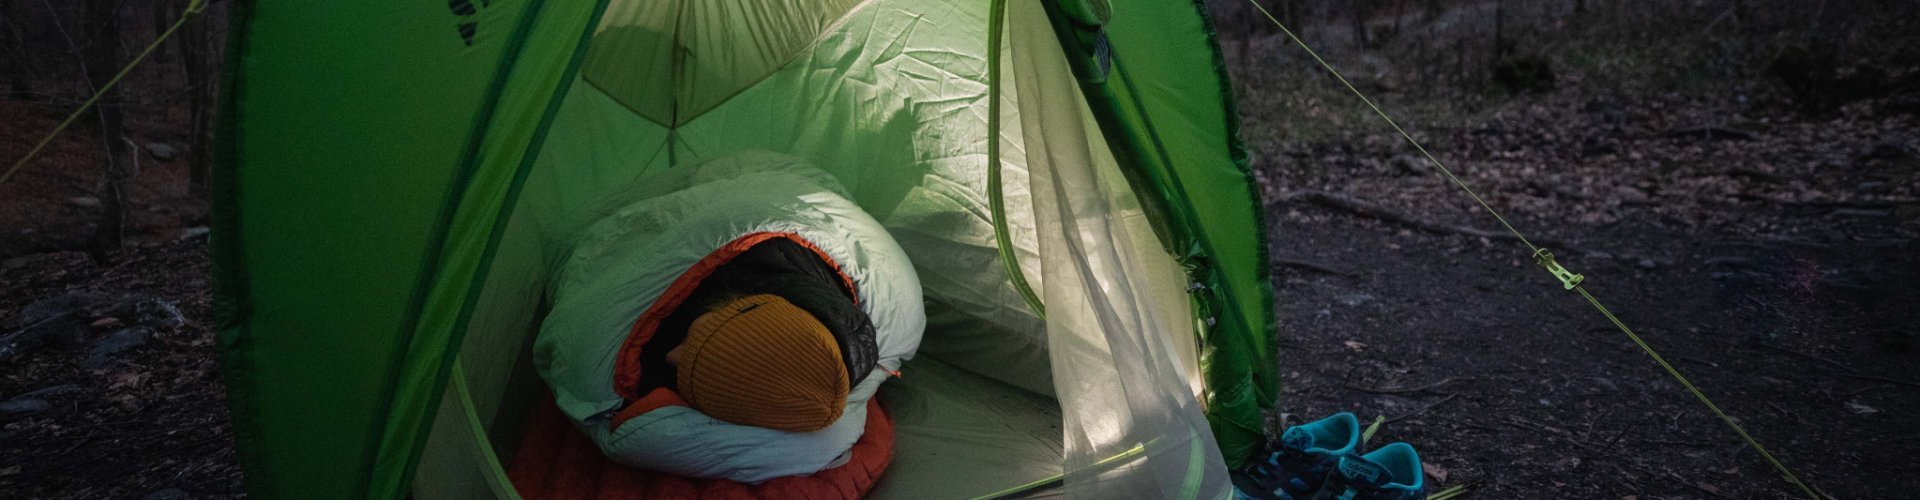 Svenja, de l'équipe de gestion de produits de bc, est chaudement emmitouflée dans son sac de couchage Deuter, dans une tente VAUDE.